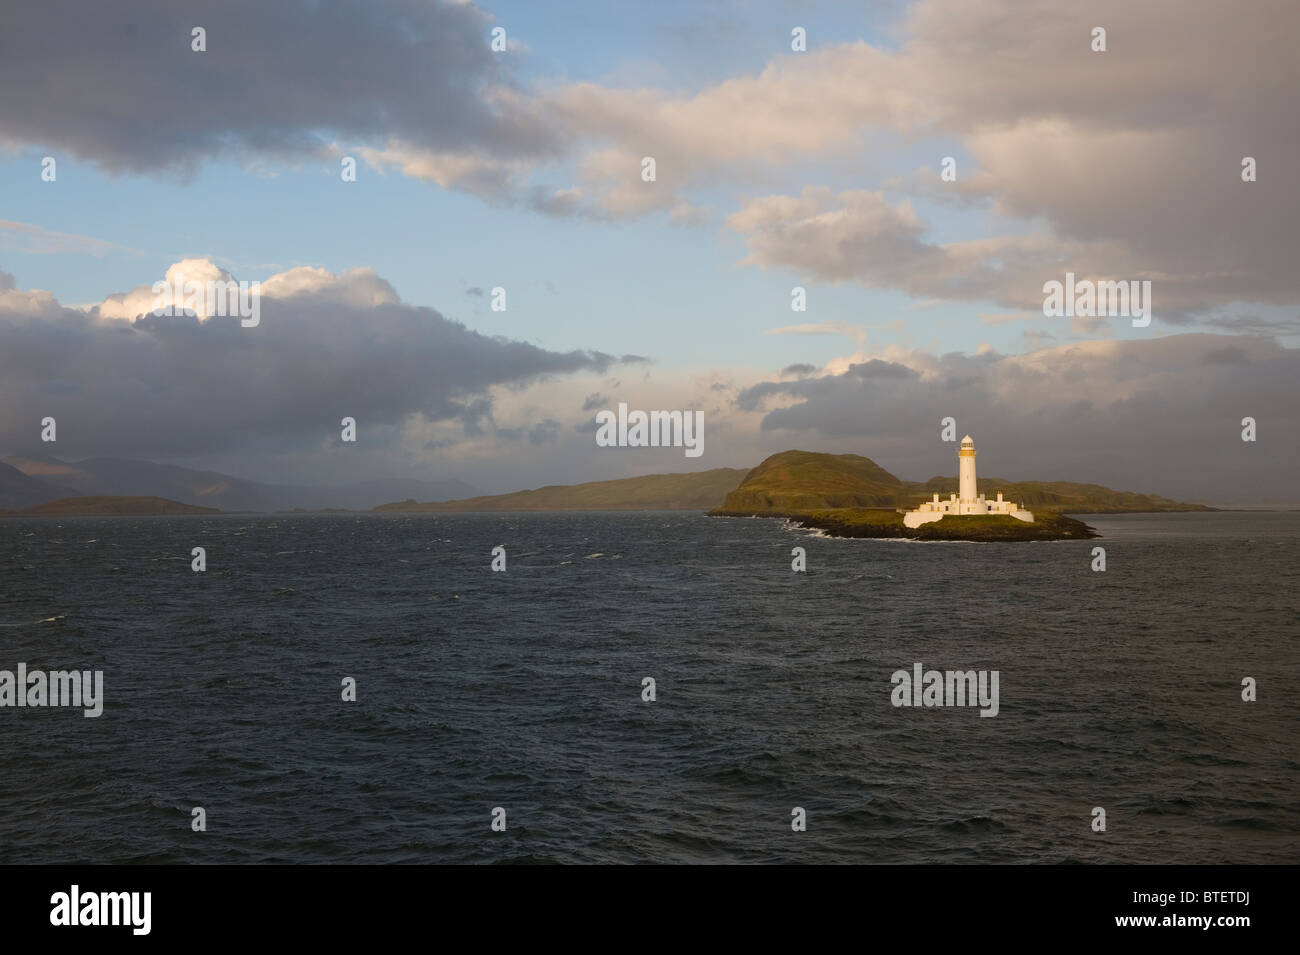 Île de Mull, en Ecosse. Phare de Lismore sur l'île de Lismore construite par Robert Stevenson en 1833 protège la navigation dans le Banque D'Images